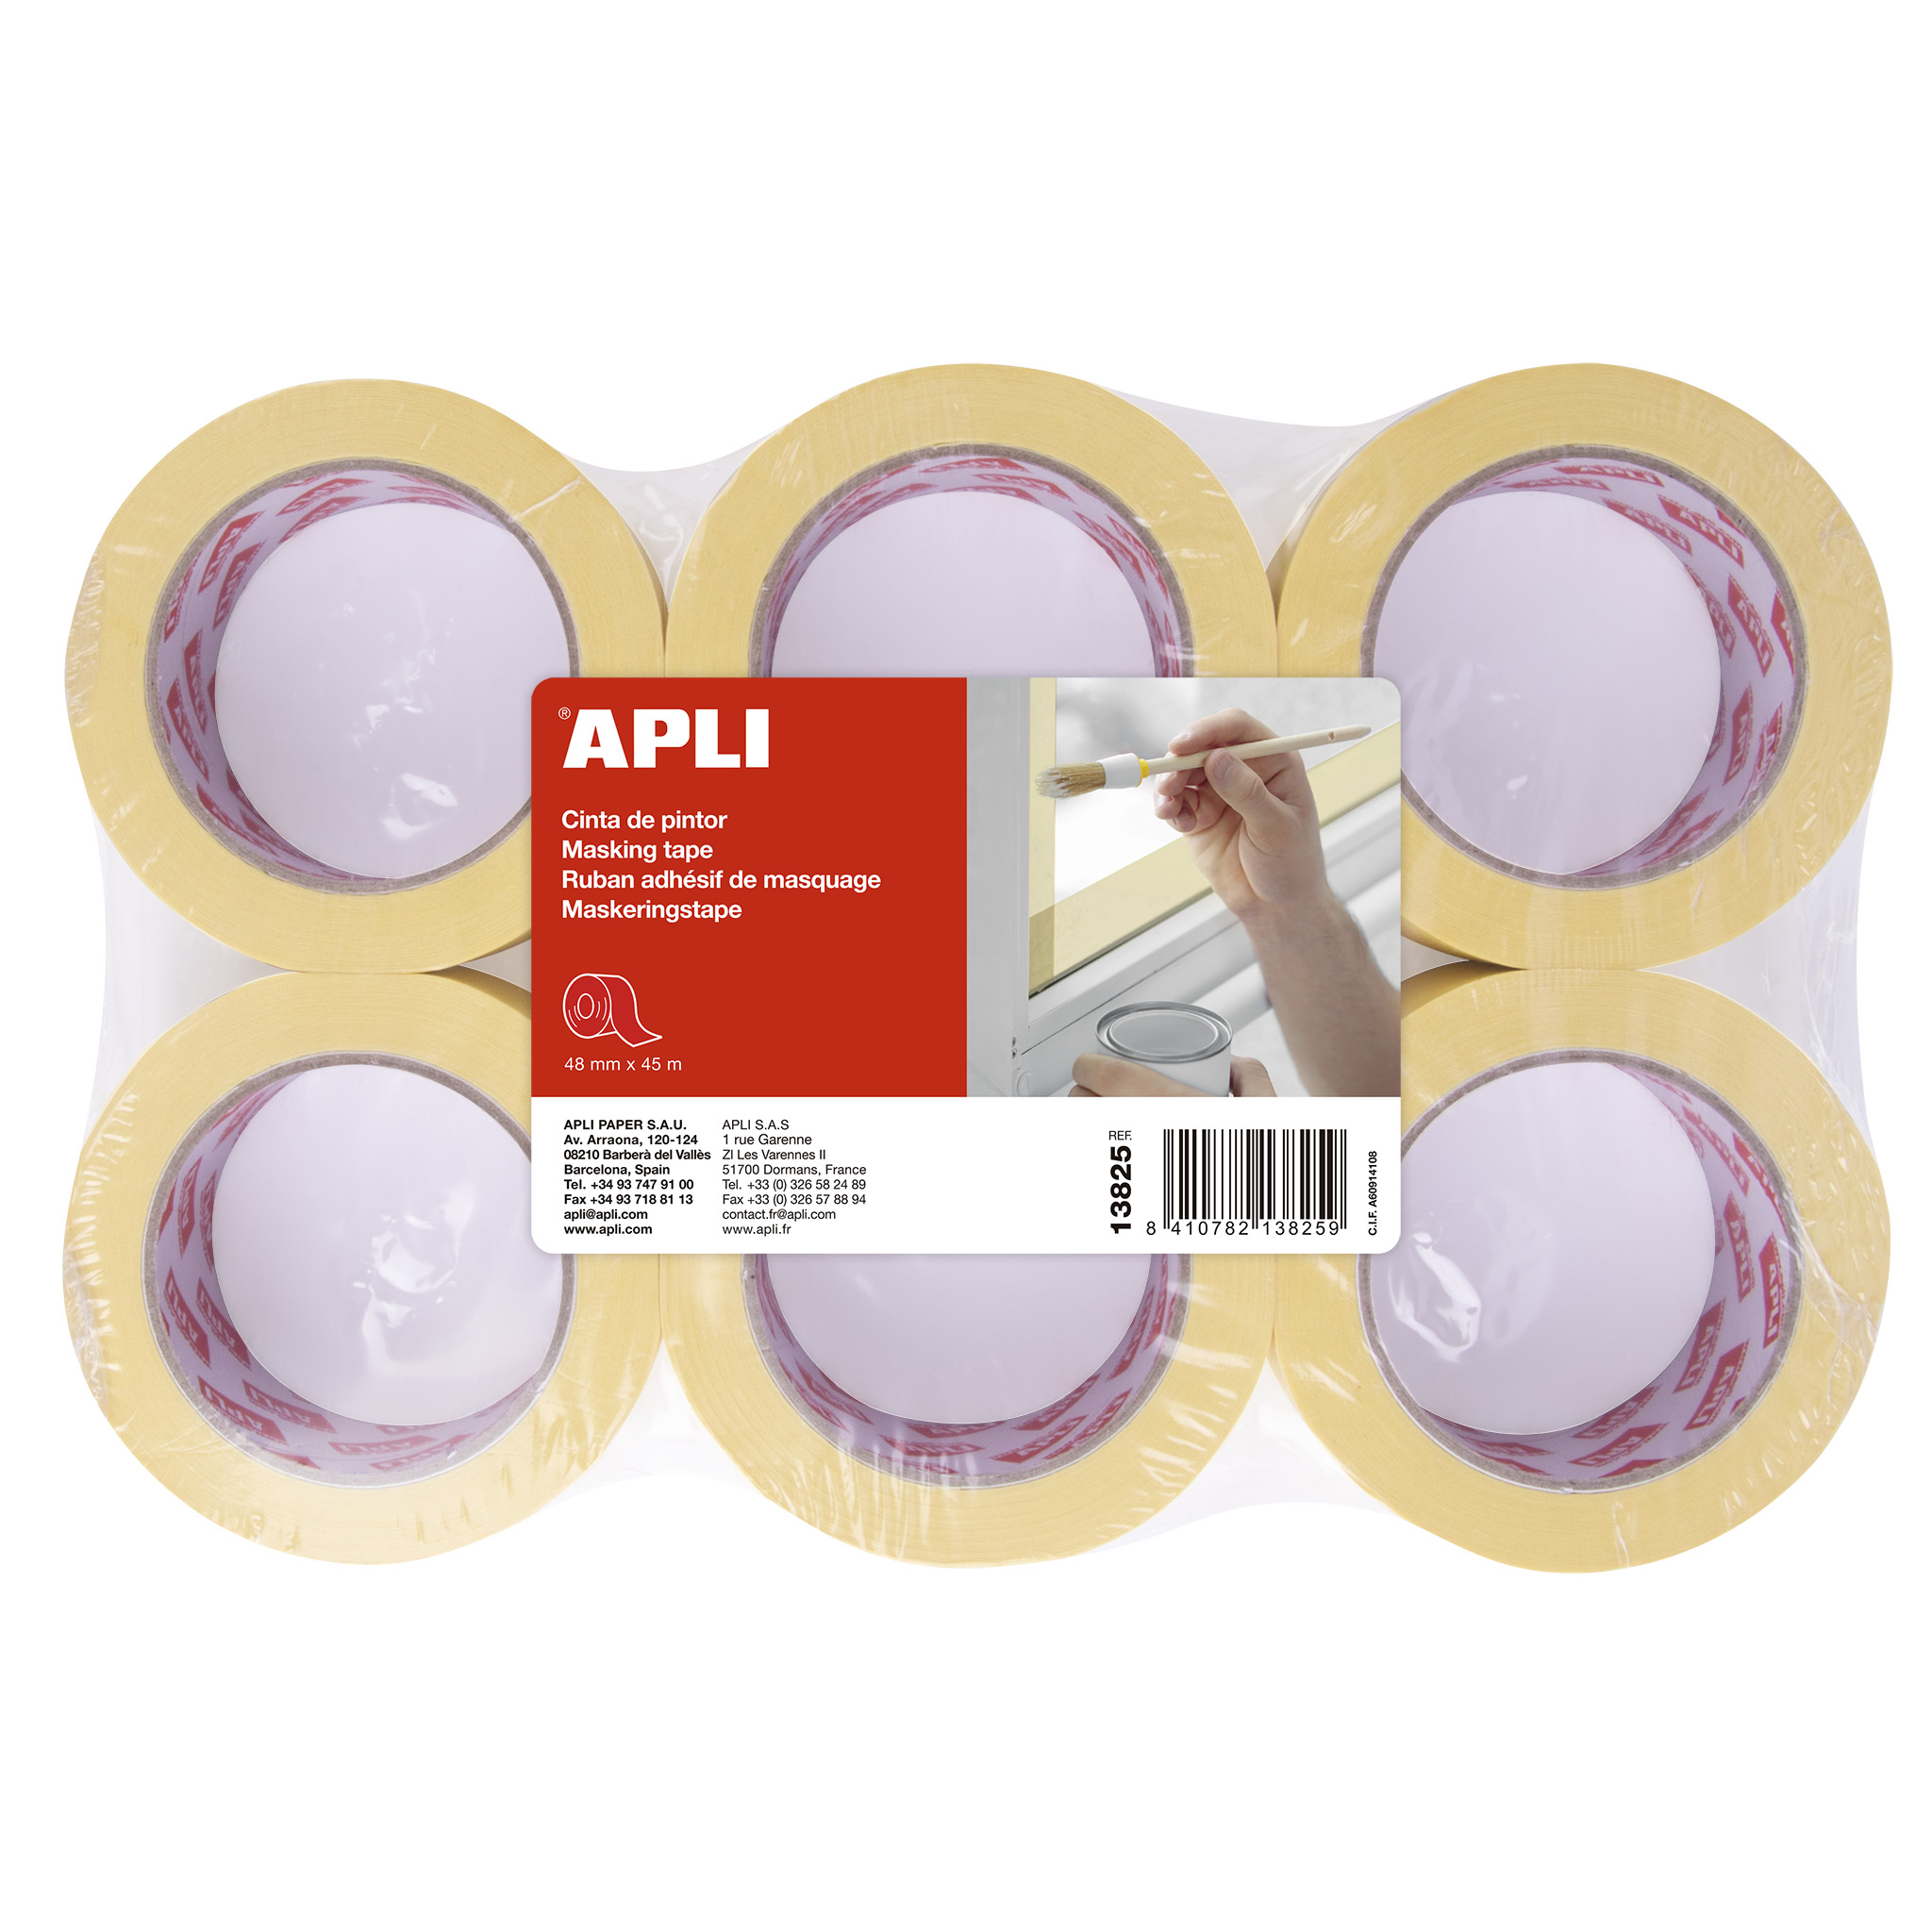 Apli Painter's Tape 48 mm x 45 m - Adhésif haute résistance - Facile à couper et à appliquer - Idéal pour la peinture et la décoration - Bleu